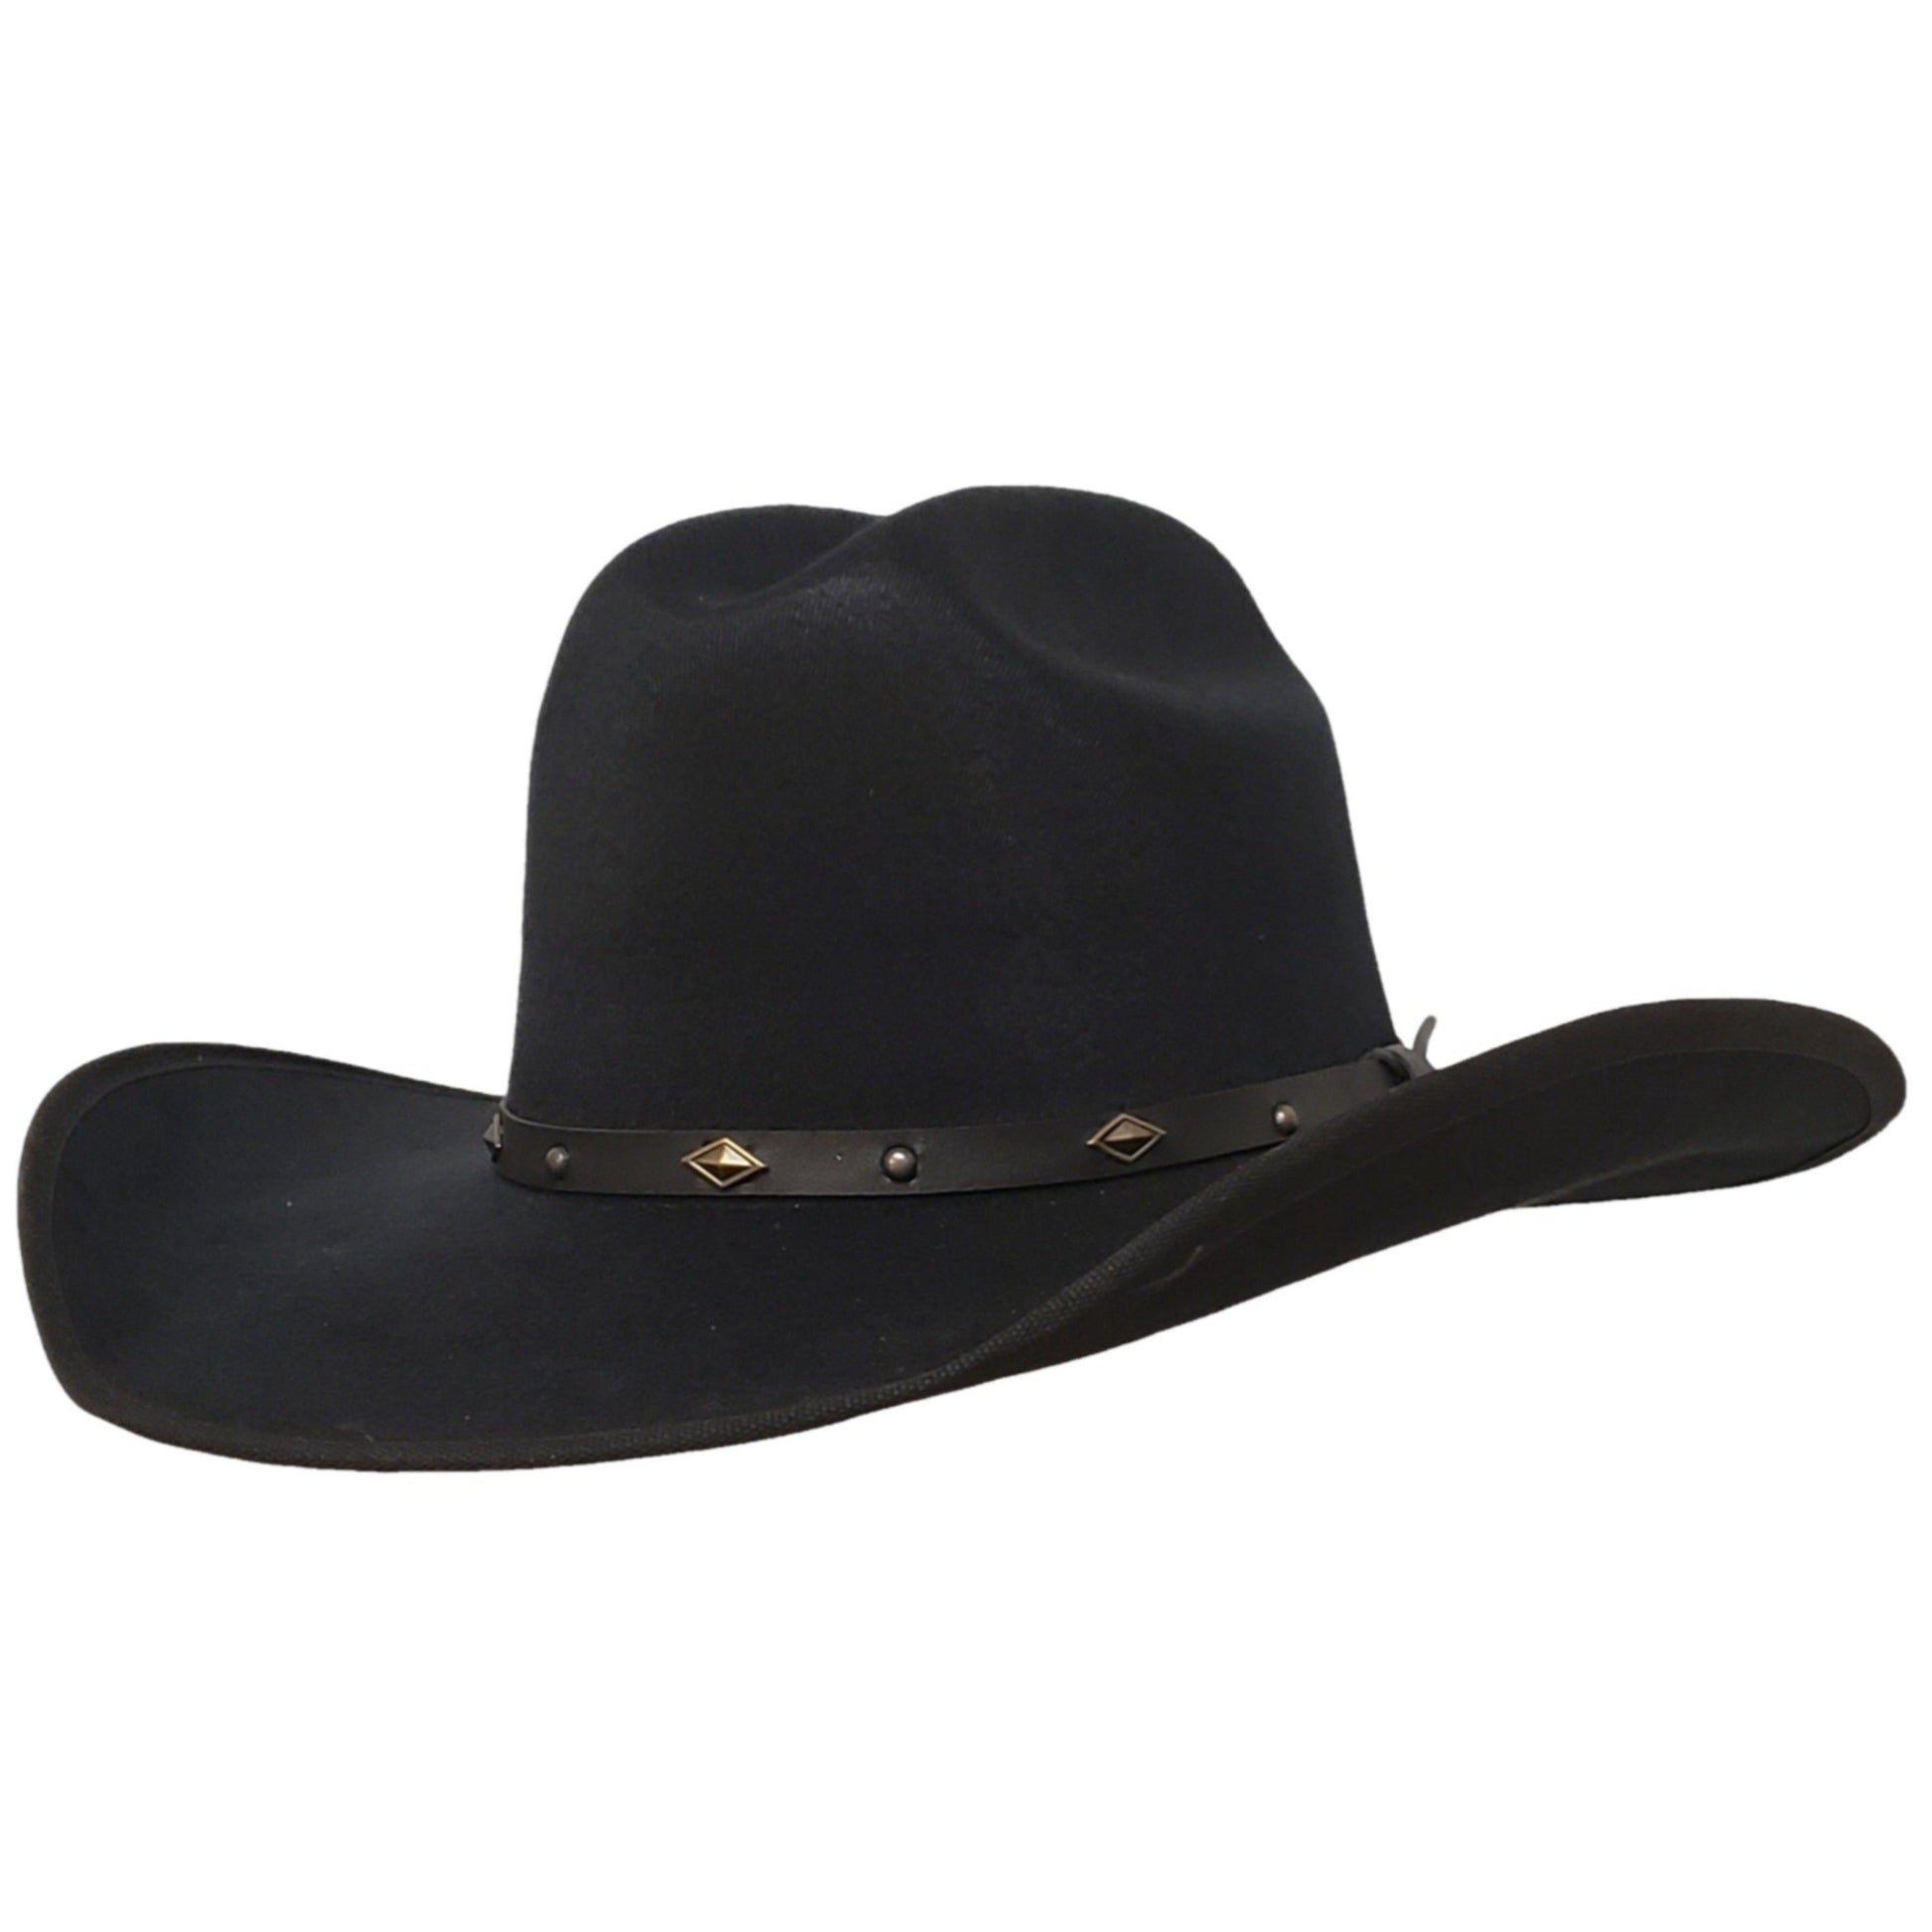 Black felt Mexican cowboy hat 